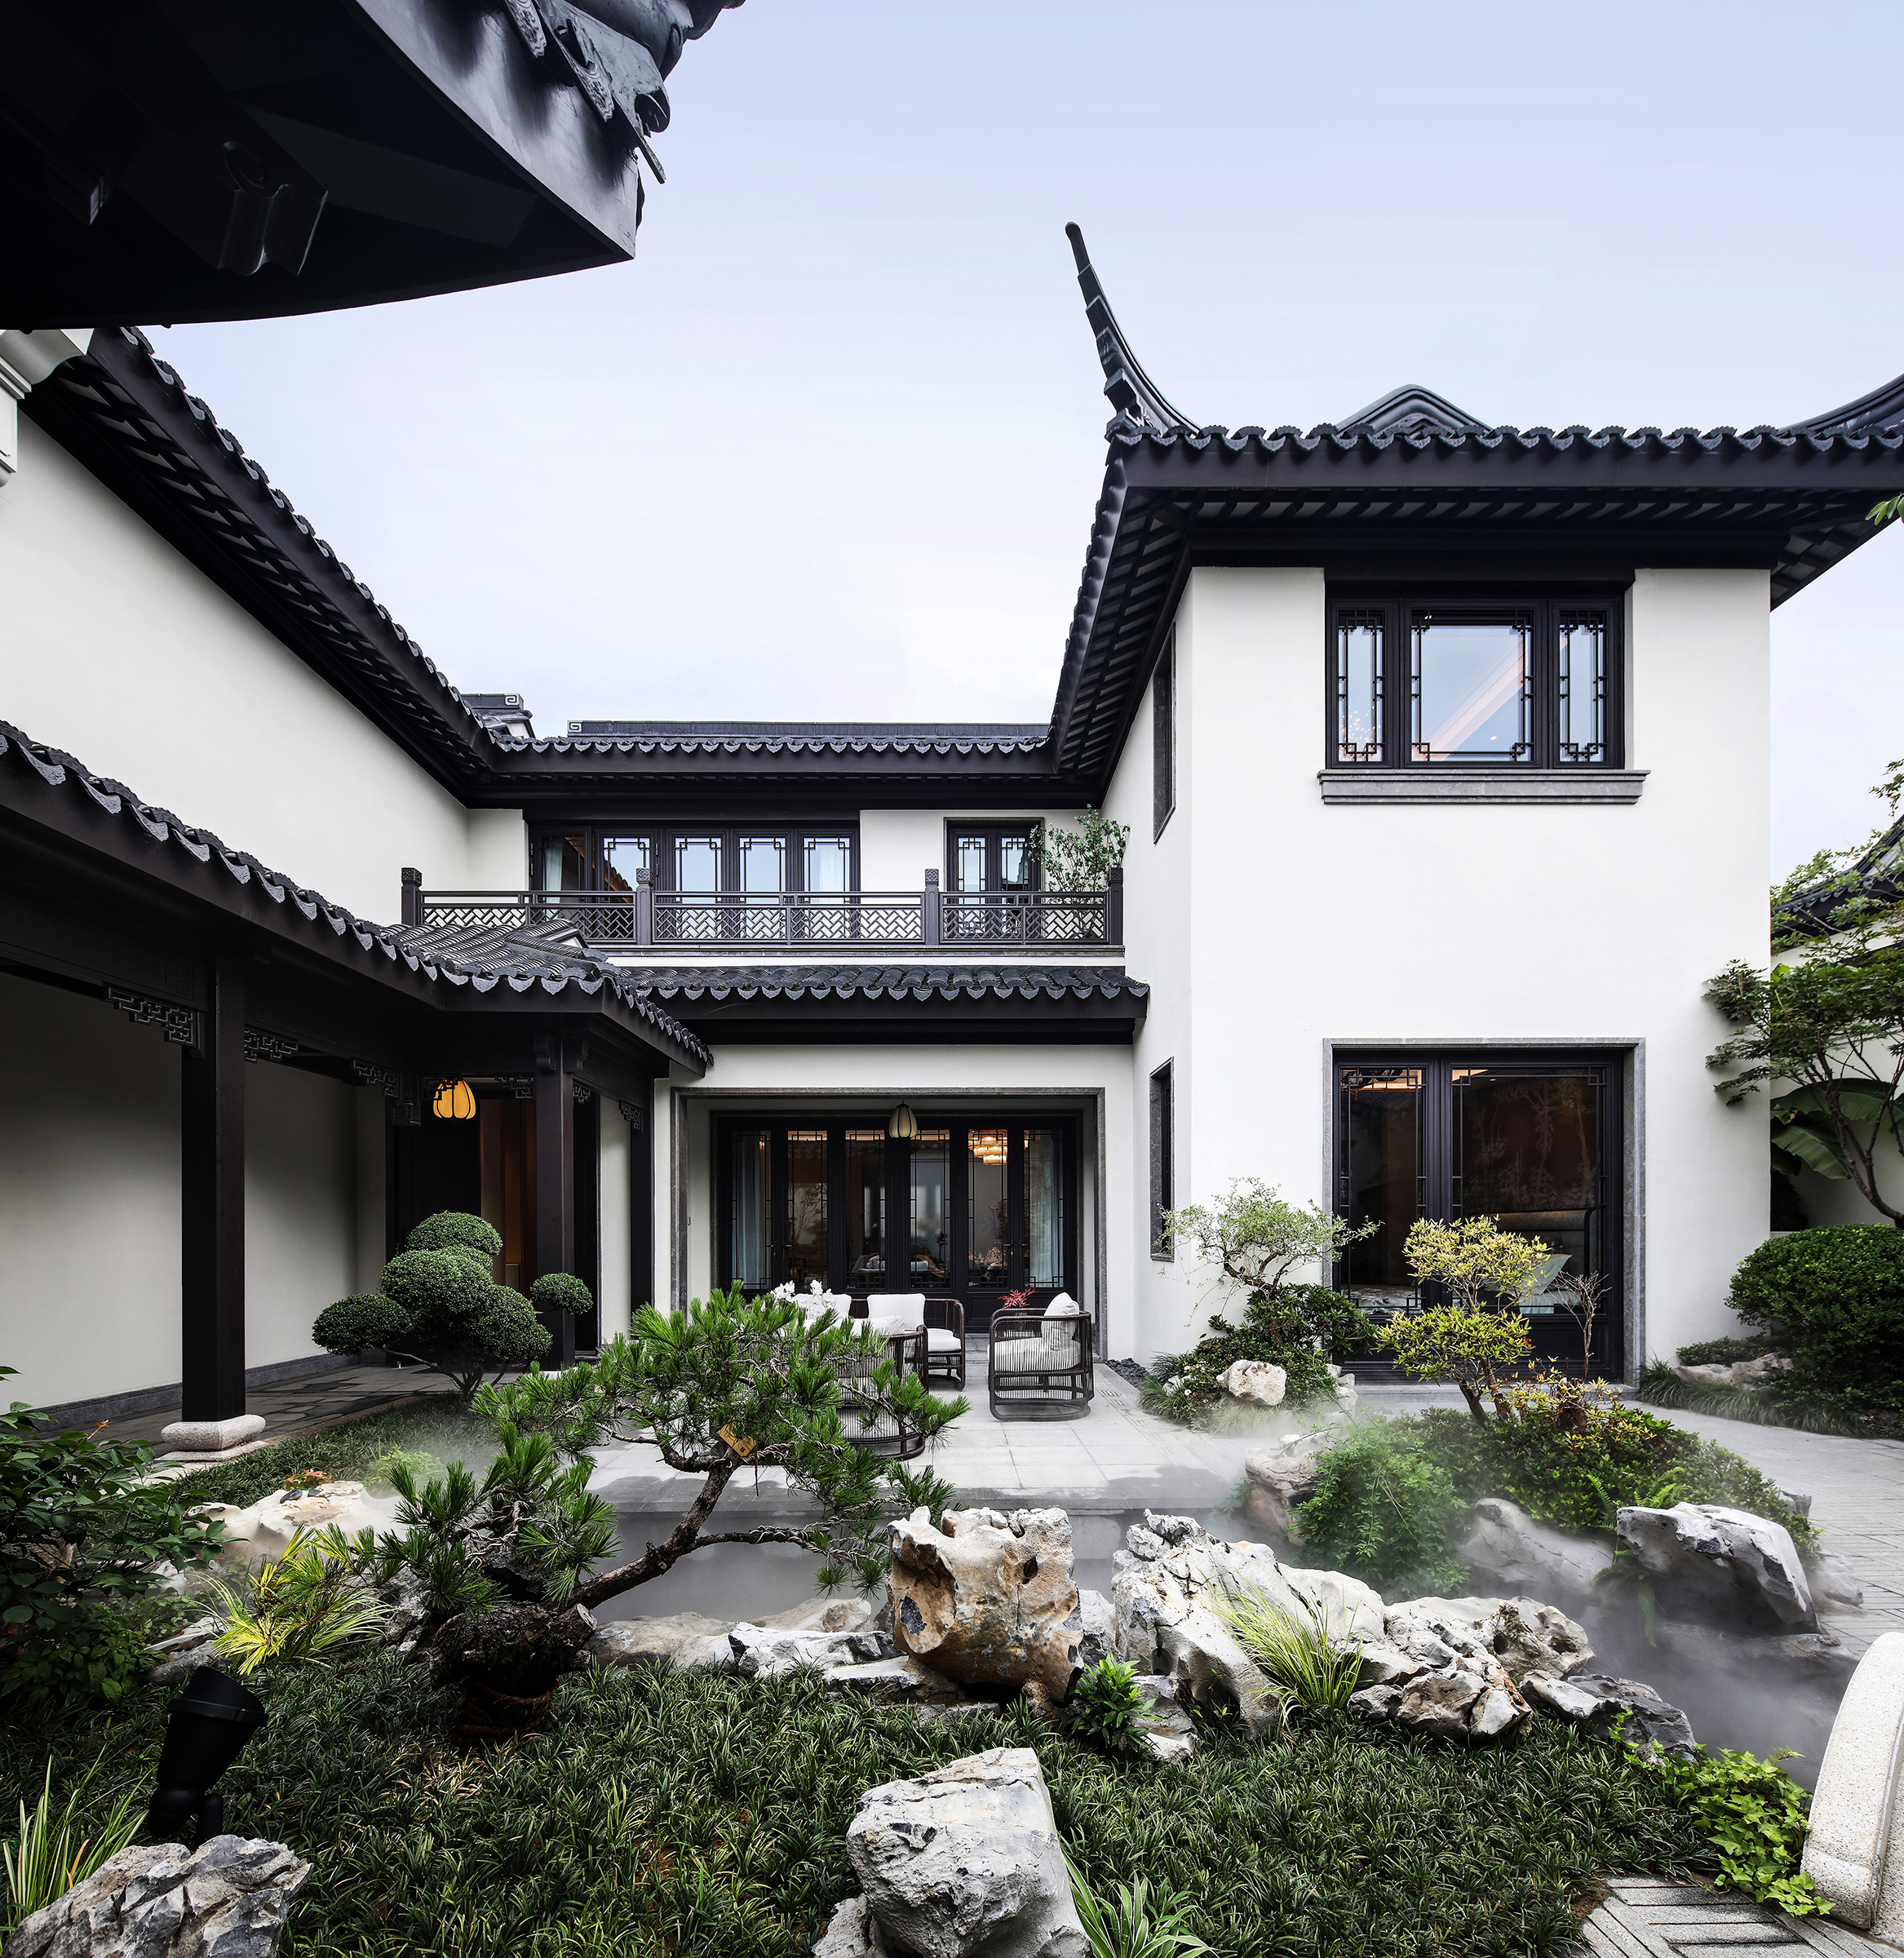 MUSE Design Winners - Nanjing Gaochun Vliia Model House